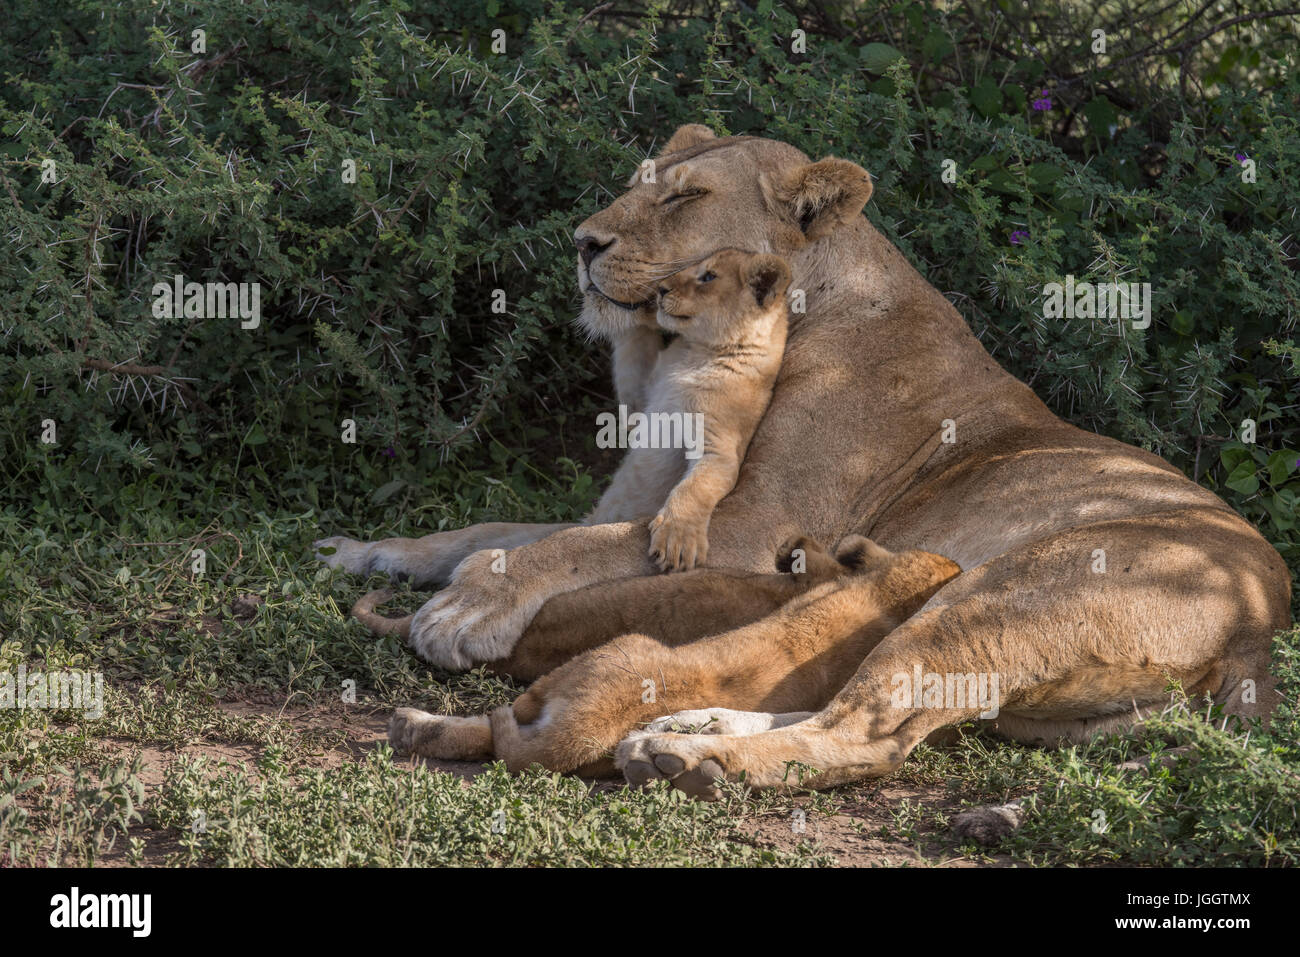 Lion cubs nursing, Tanzania Stock Photo